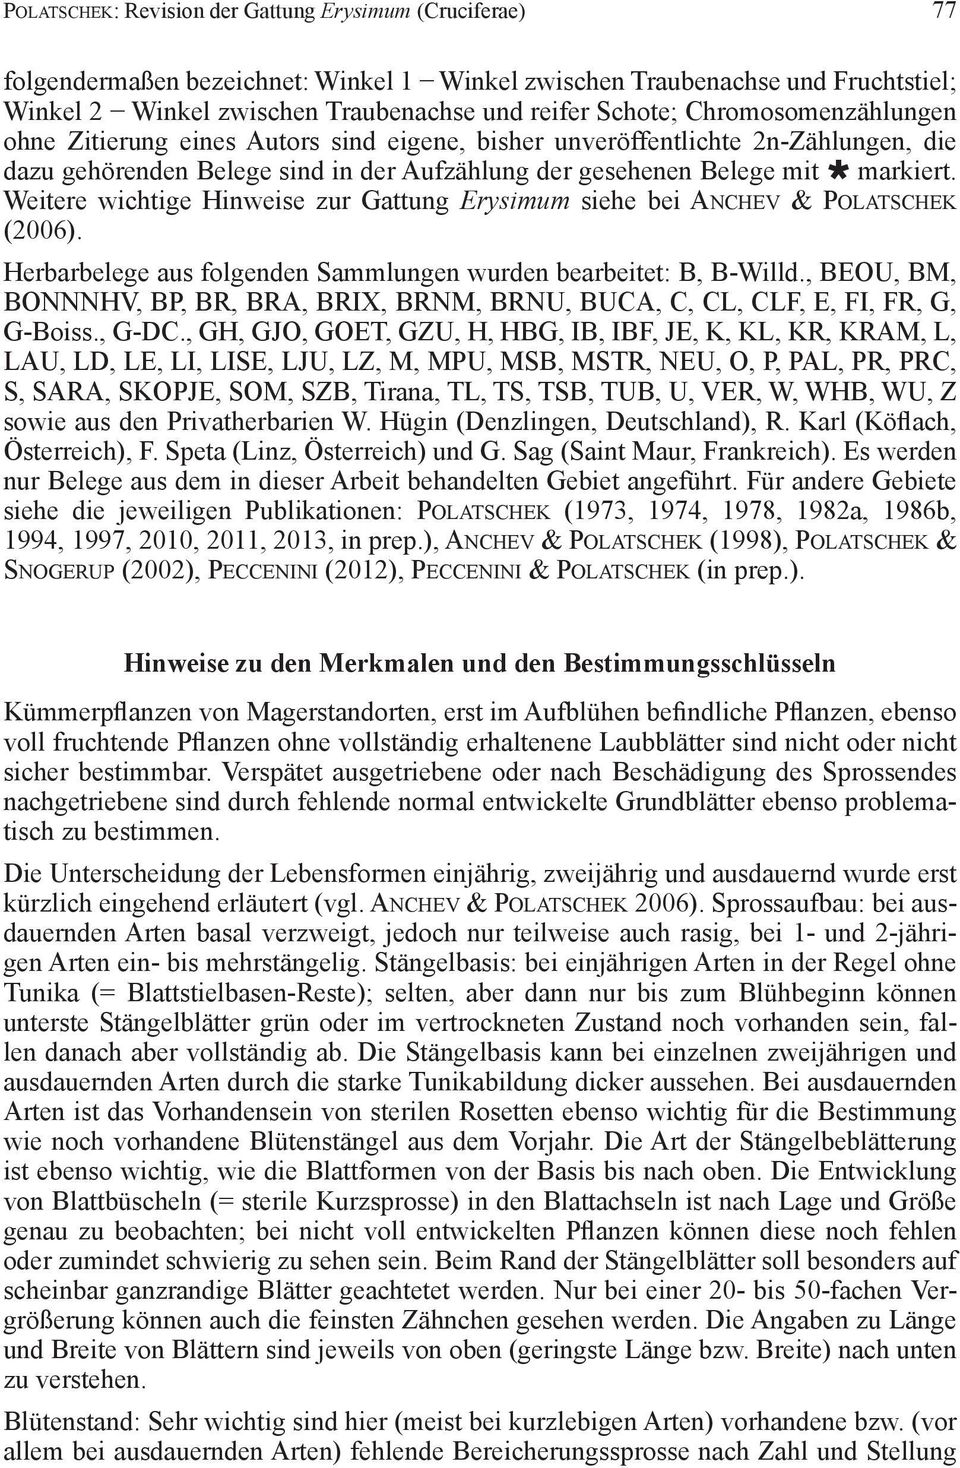 Weitere wichtige Hinweise zur Gattung Erysimum siehe bei anchev & Polatschek (2006). Herbarbelege aus folgenden Sammlungen wurden bearbeitet: B, B-Willd.